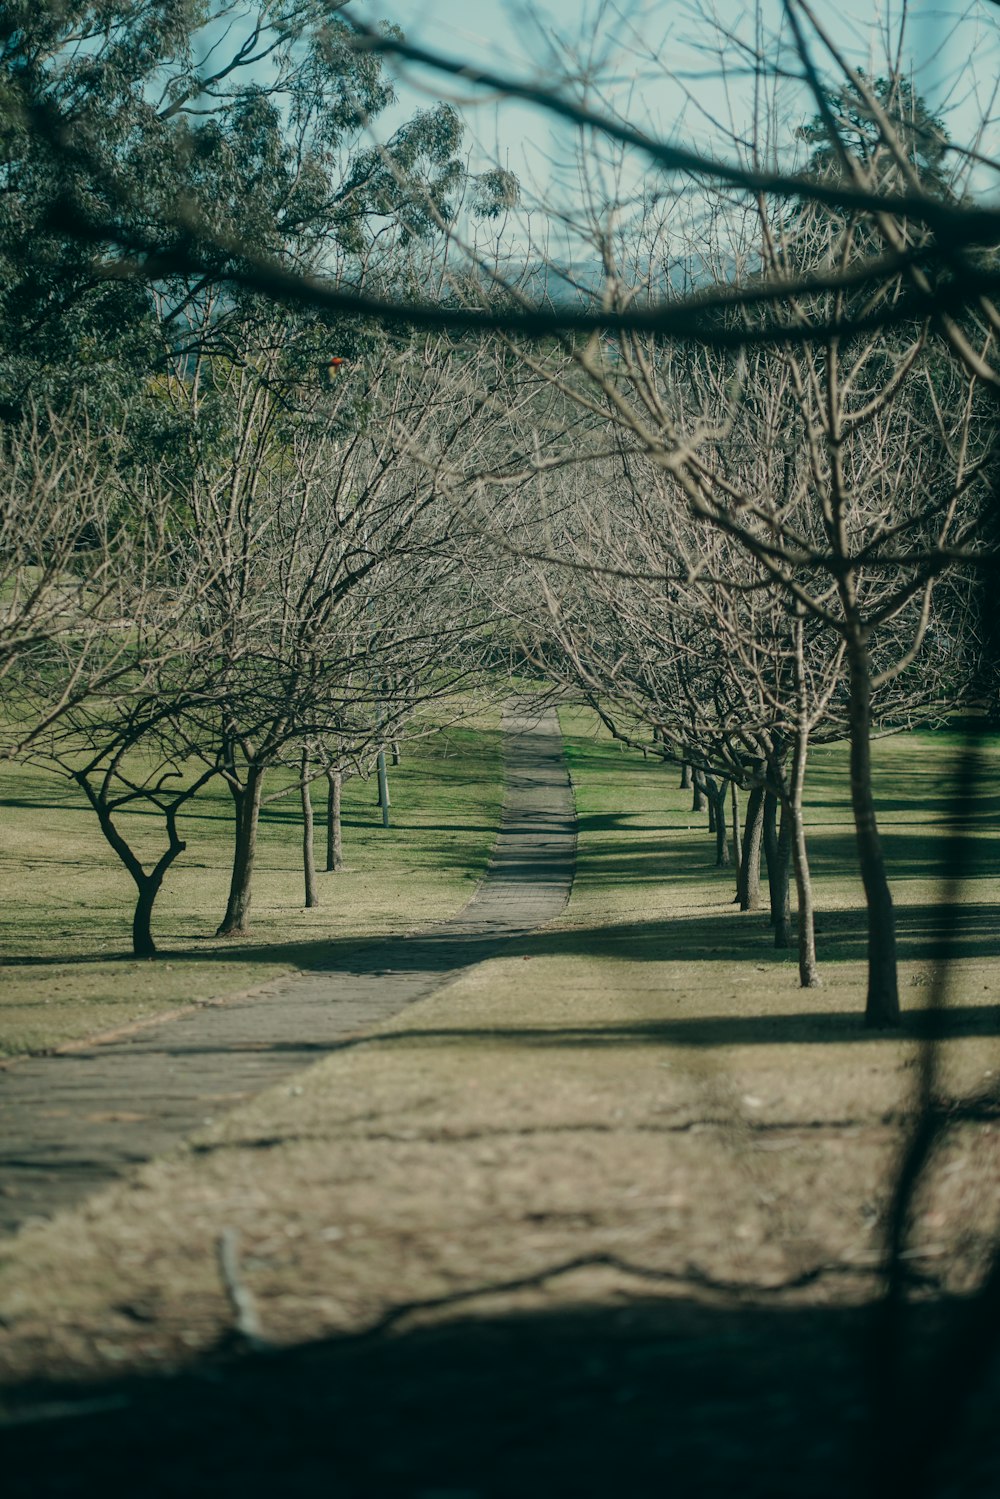 um caminho arborizado no meio de um parque